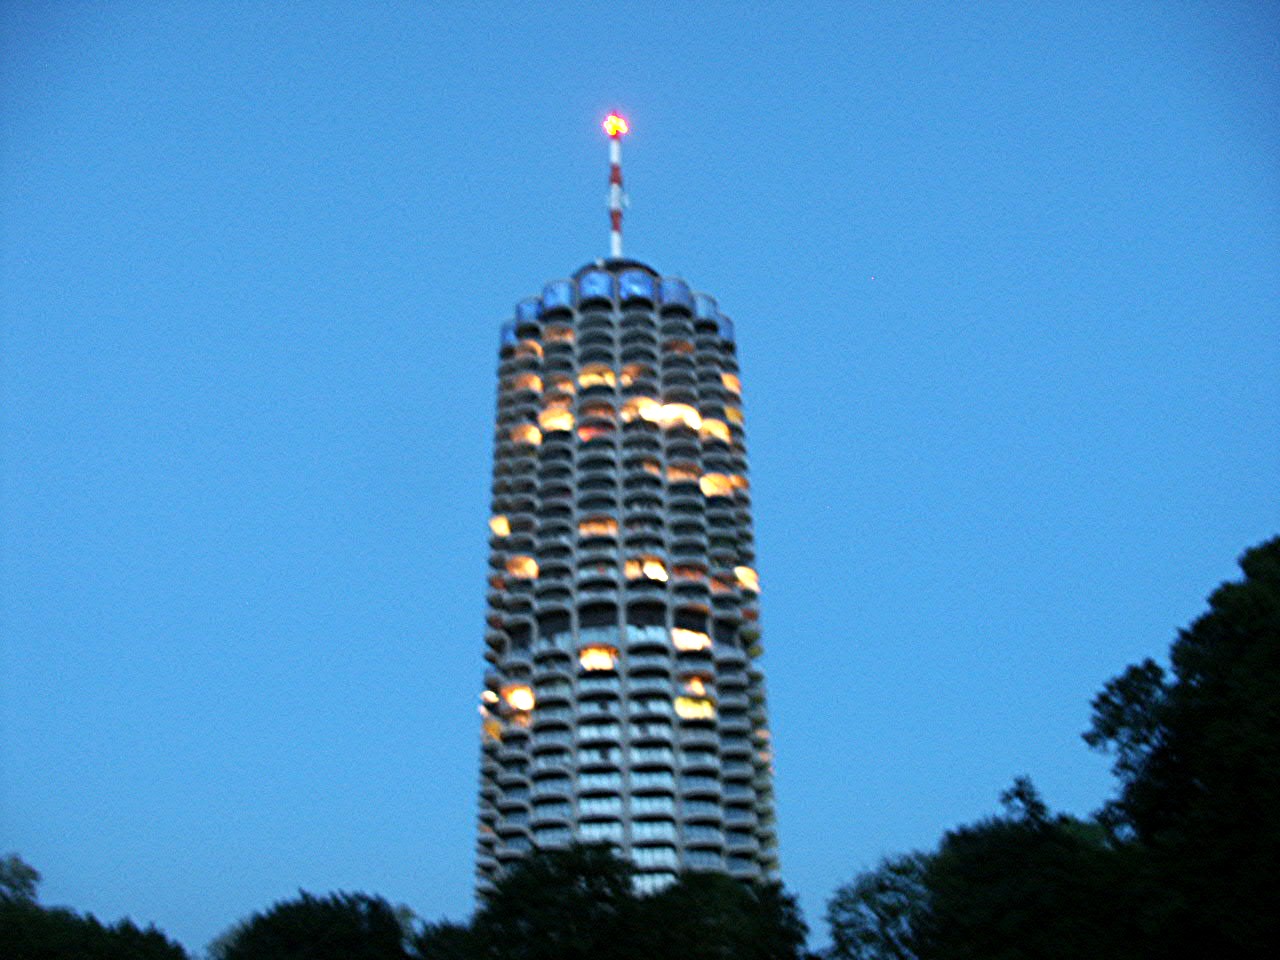 Hotelturm Augsburg 